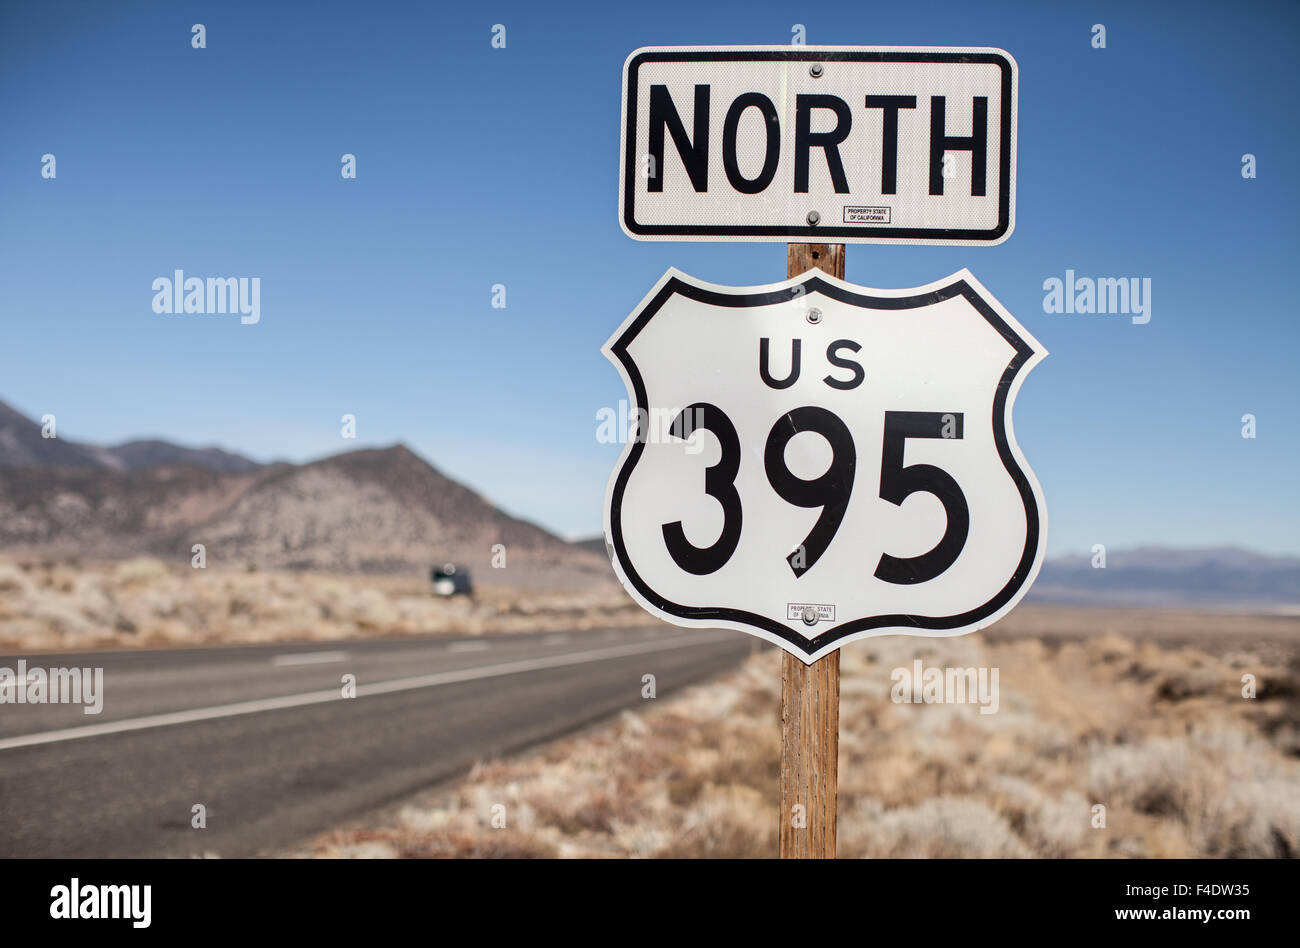 U.S. Route 395 Nord signe. Banque D'Images